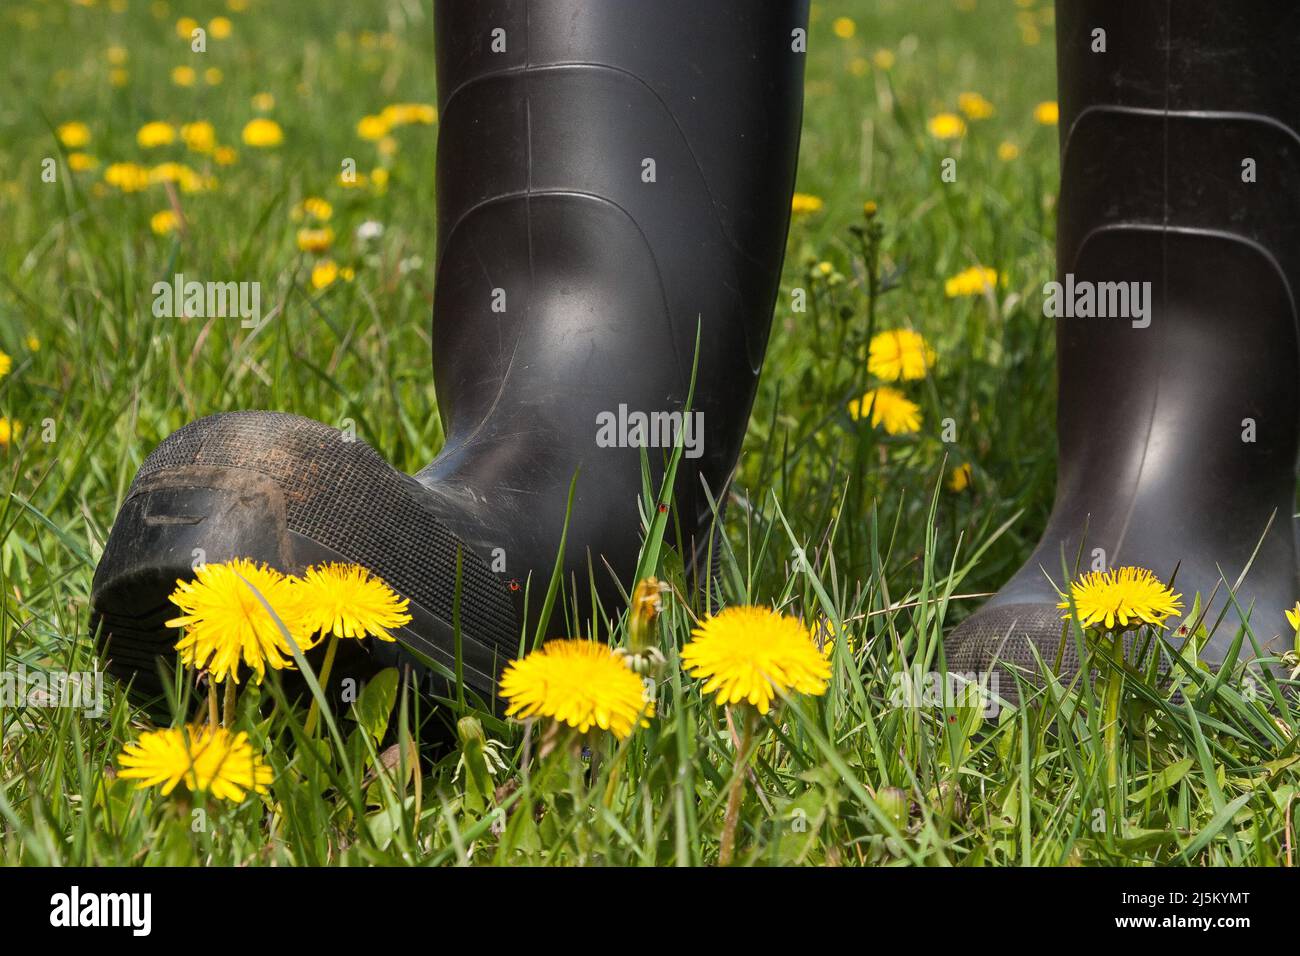 Indossare stivali di gomma quando si escursioni nel prato e la natura offre una buona protezione contro le zecche, in quanto non salire più di 1,50 metri. Foto Stock